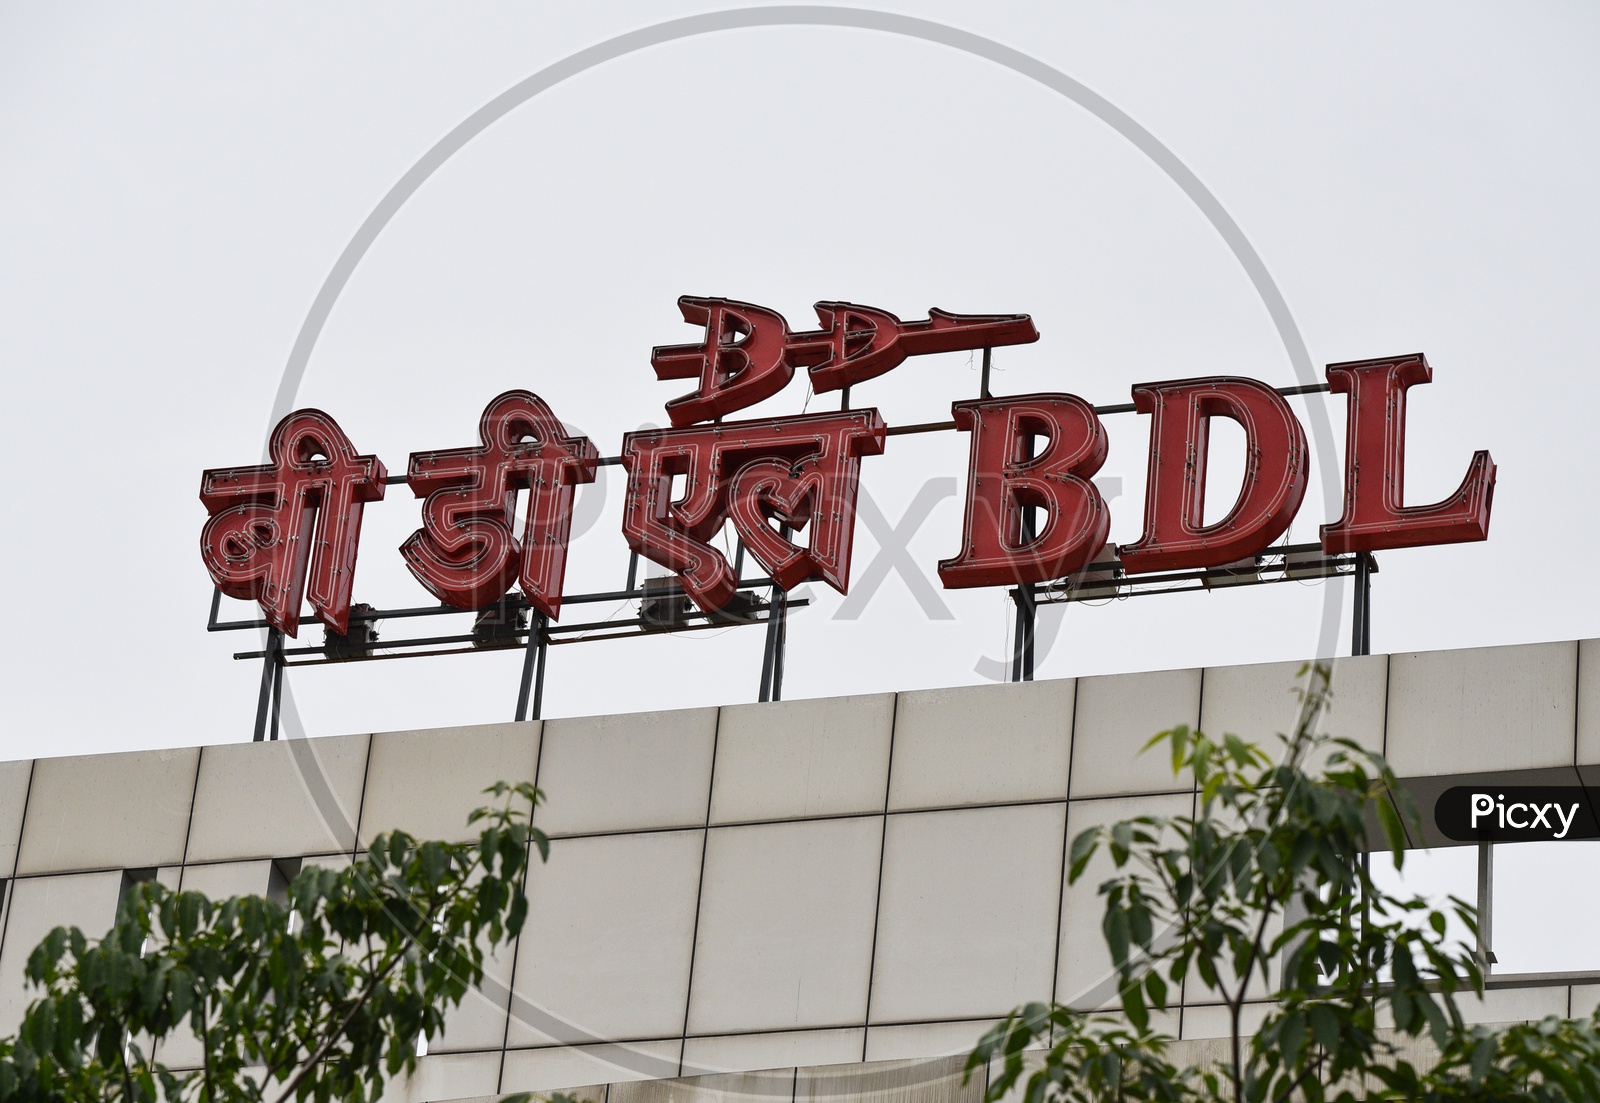 BDL Bharath Dynamics Limited Hyderabad office